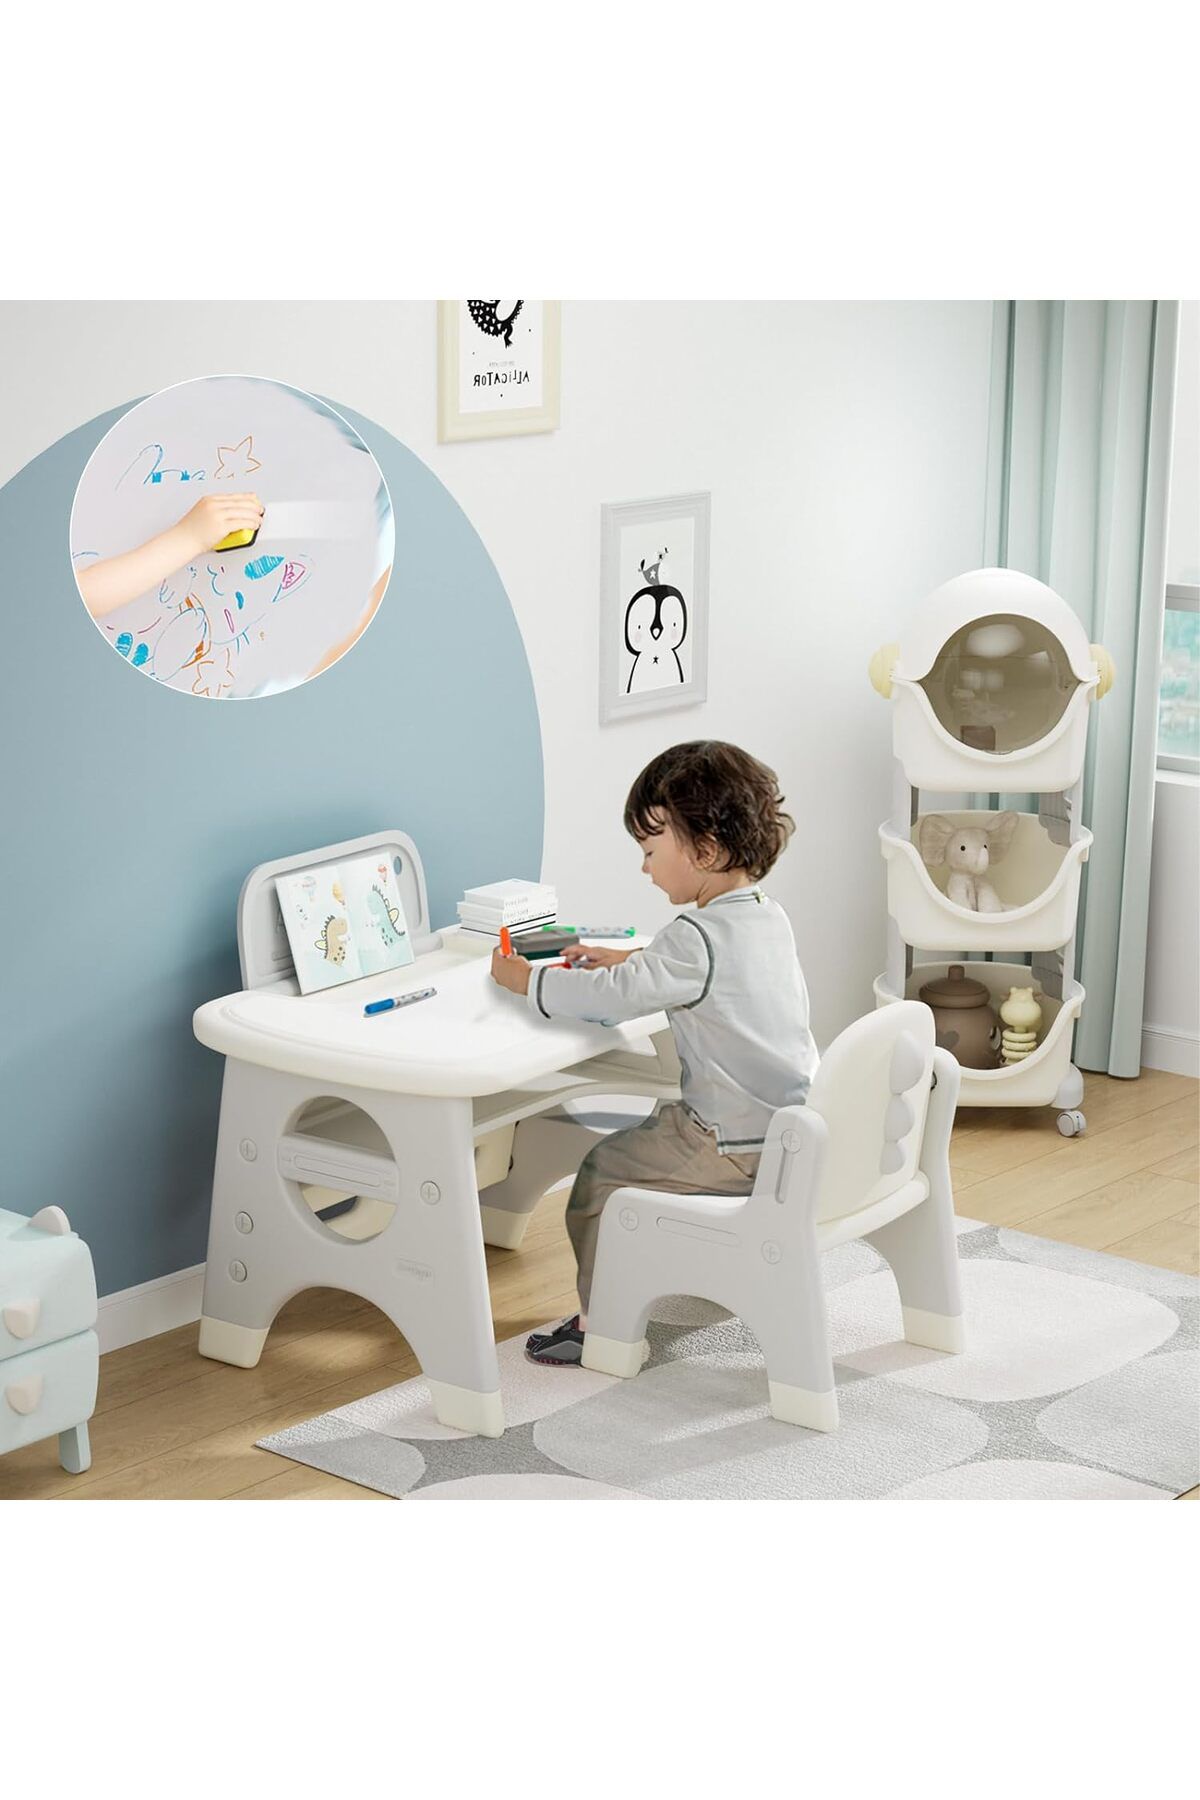 BanaSuper Yaratıcı ve Eğlenceli Çocuk Çizim Masası ve Silinebilir Tahtalı Sandalye Seti  Aktivite Masası